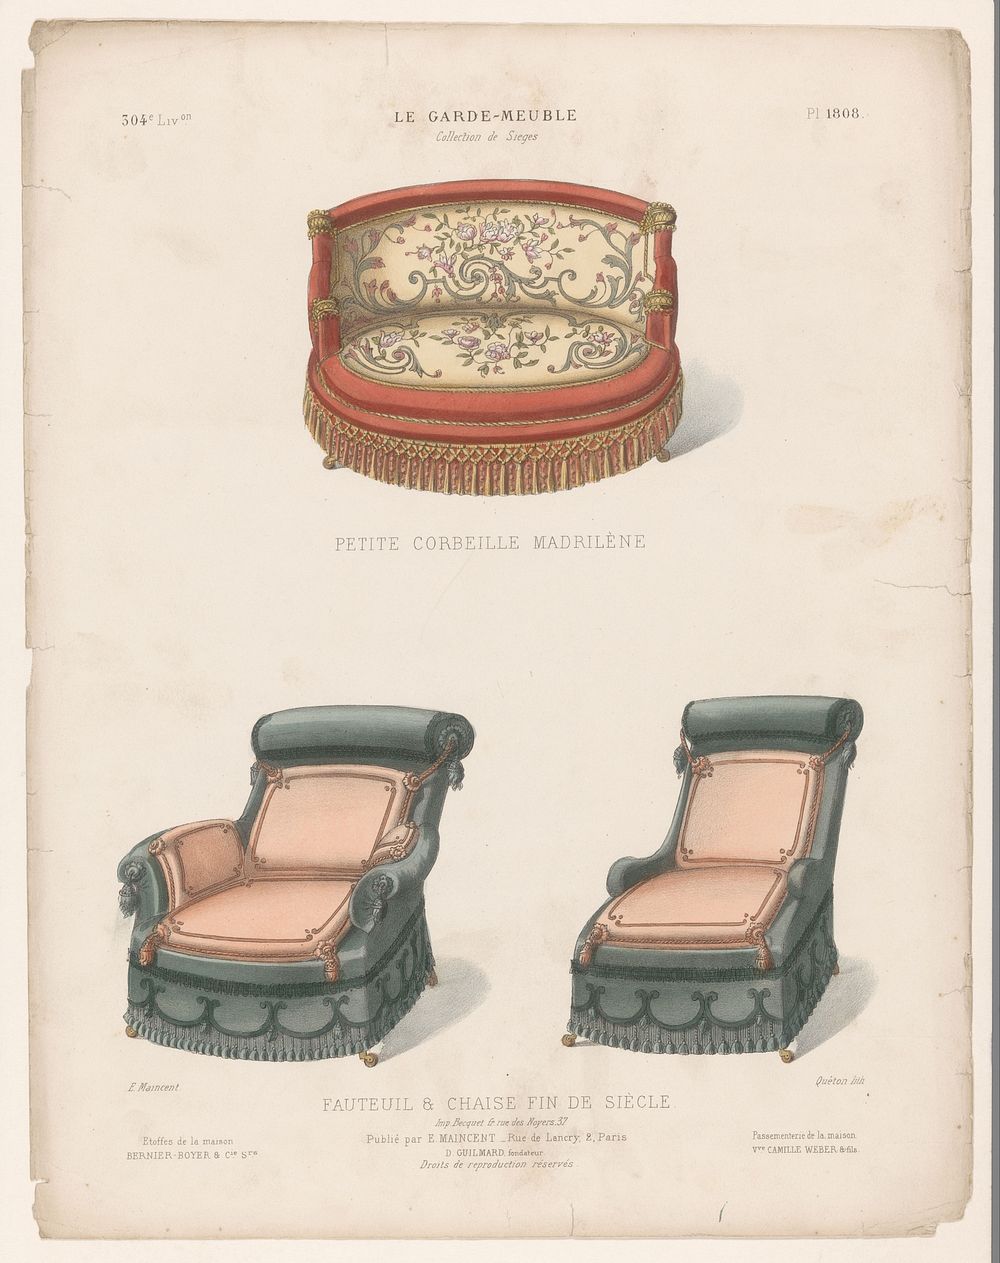 Twee fauteuils en stoel (1885 - 1895) by Quéton, Becquet frères, Eugène Maincent and Désiré Guilmard